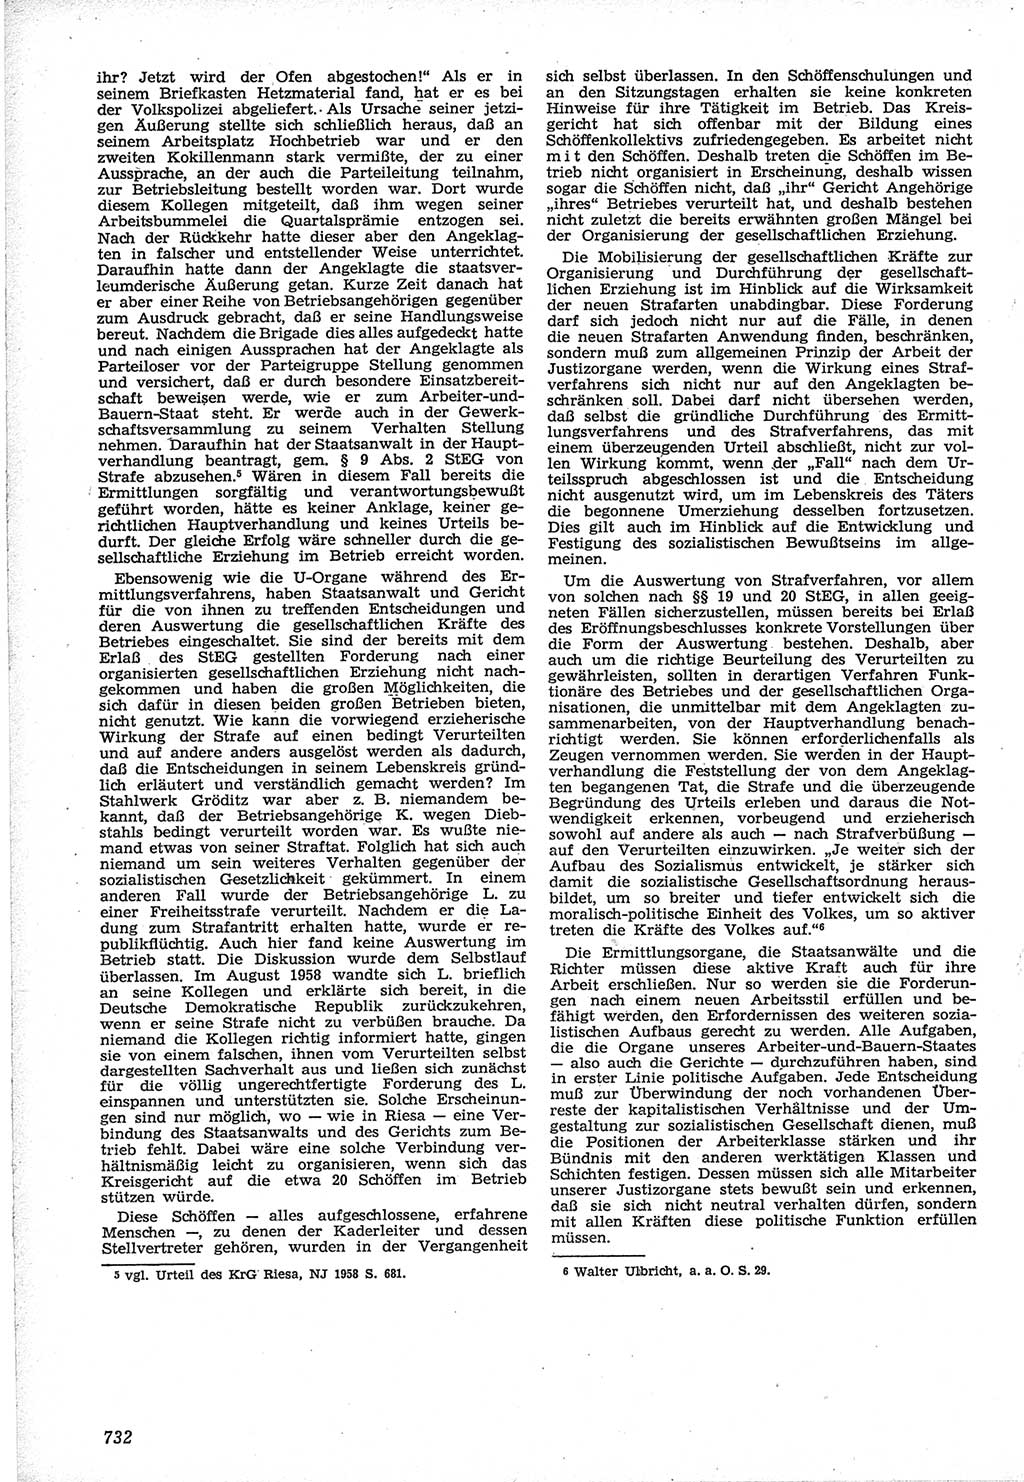 Neue Justiz (NJ), Zeitschrift für Recht und Rechtswissenschaft [Deutsche Demokratische Republik (DDR)], 12. Jahrgang 1958, Seite 732 (NJ DDR 1958, S. 732)